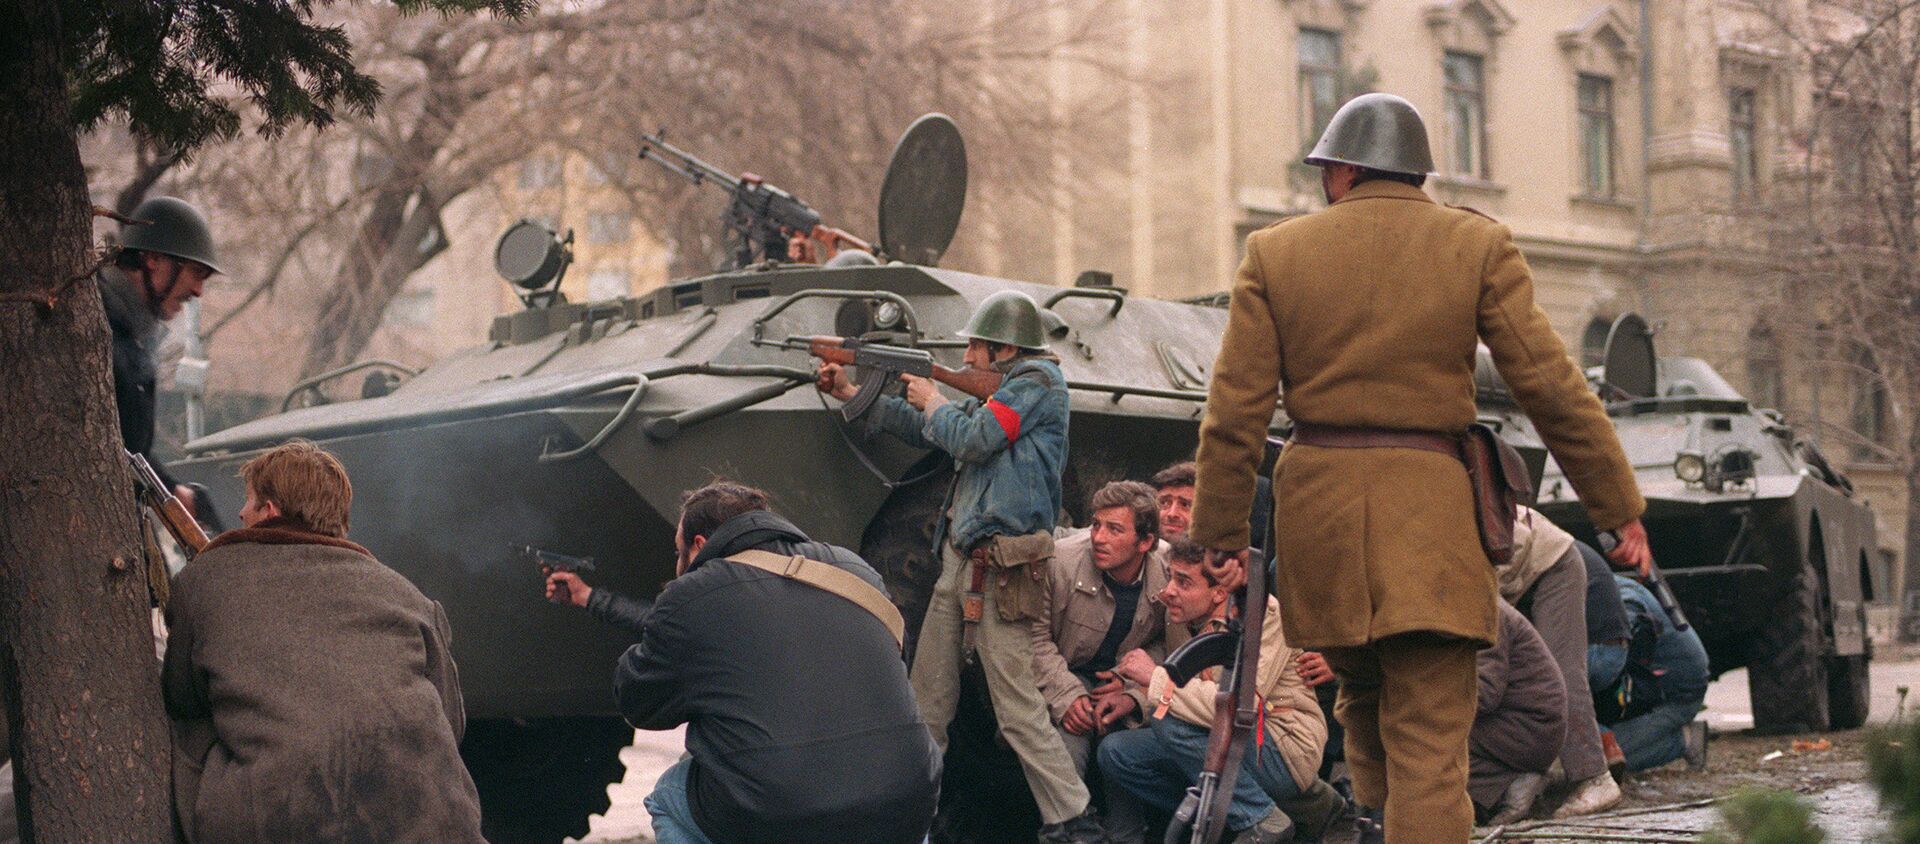 Antikomunističke demonstracije u Rumuniji 1989. protiv N. Čaušeskua - Sputnik Srbija, 1920, 13.06.2016